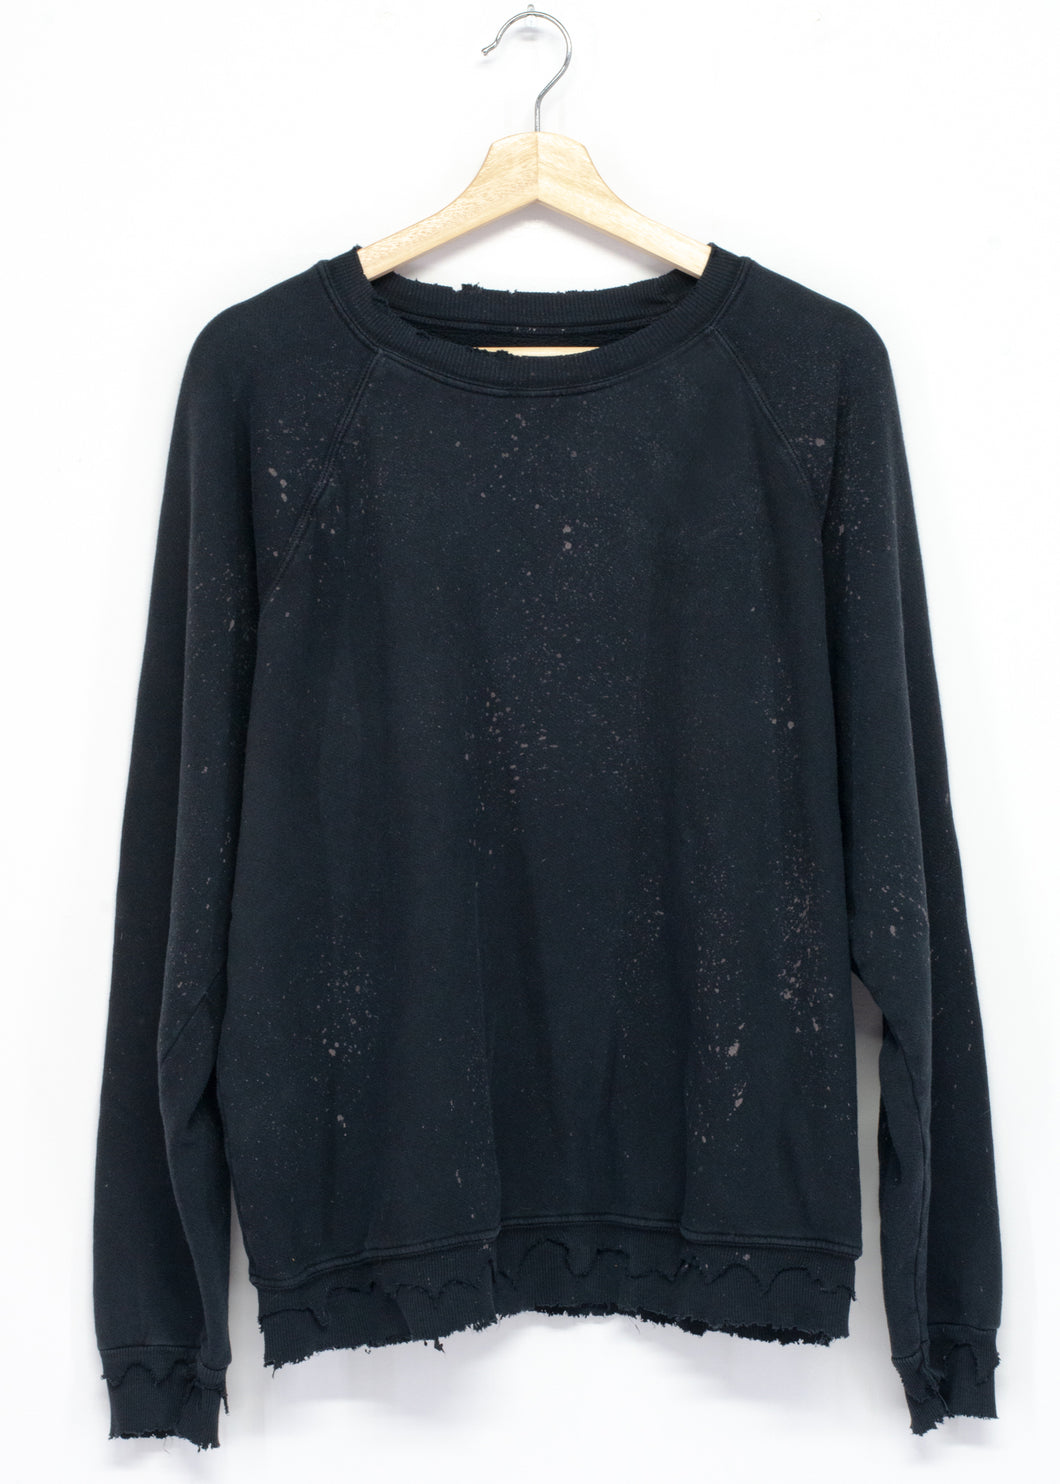 Solid Sweatshirt - Milky Way Washed Black